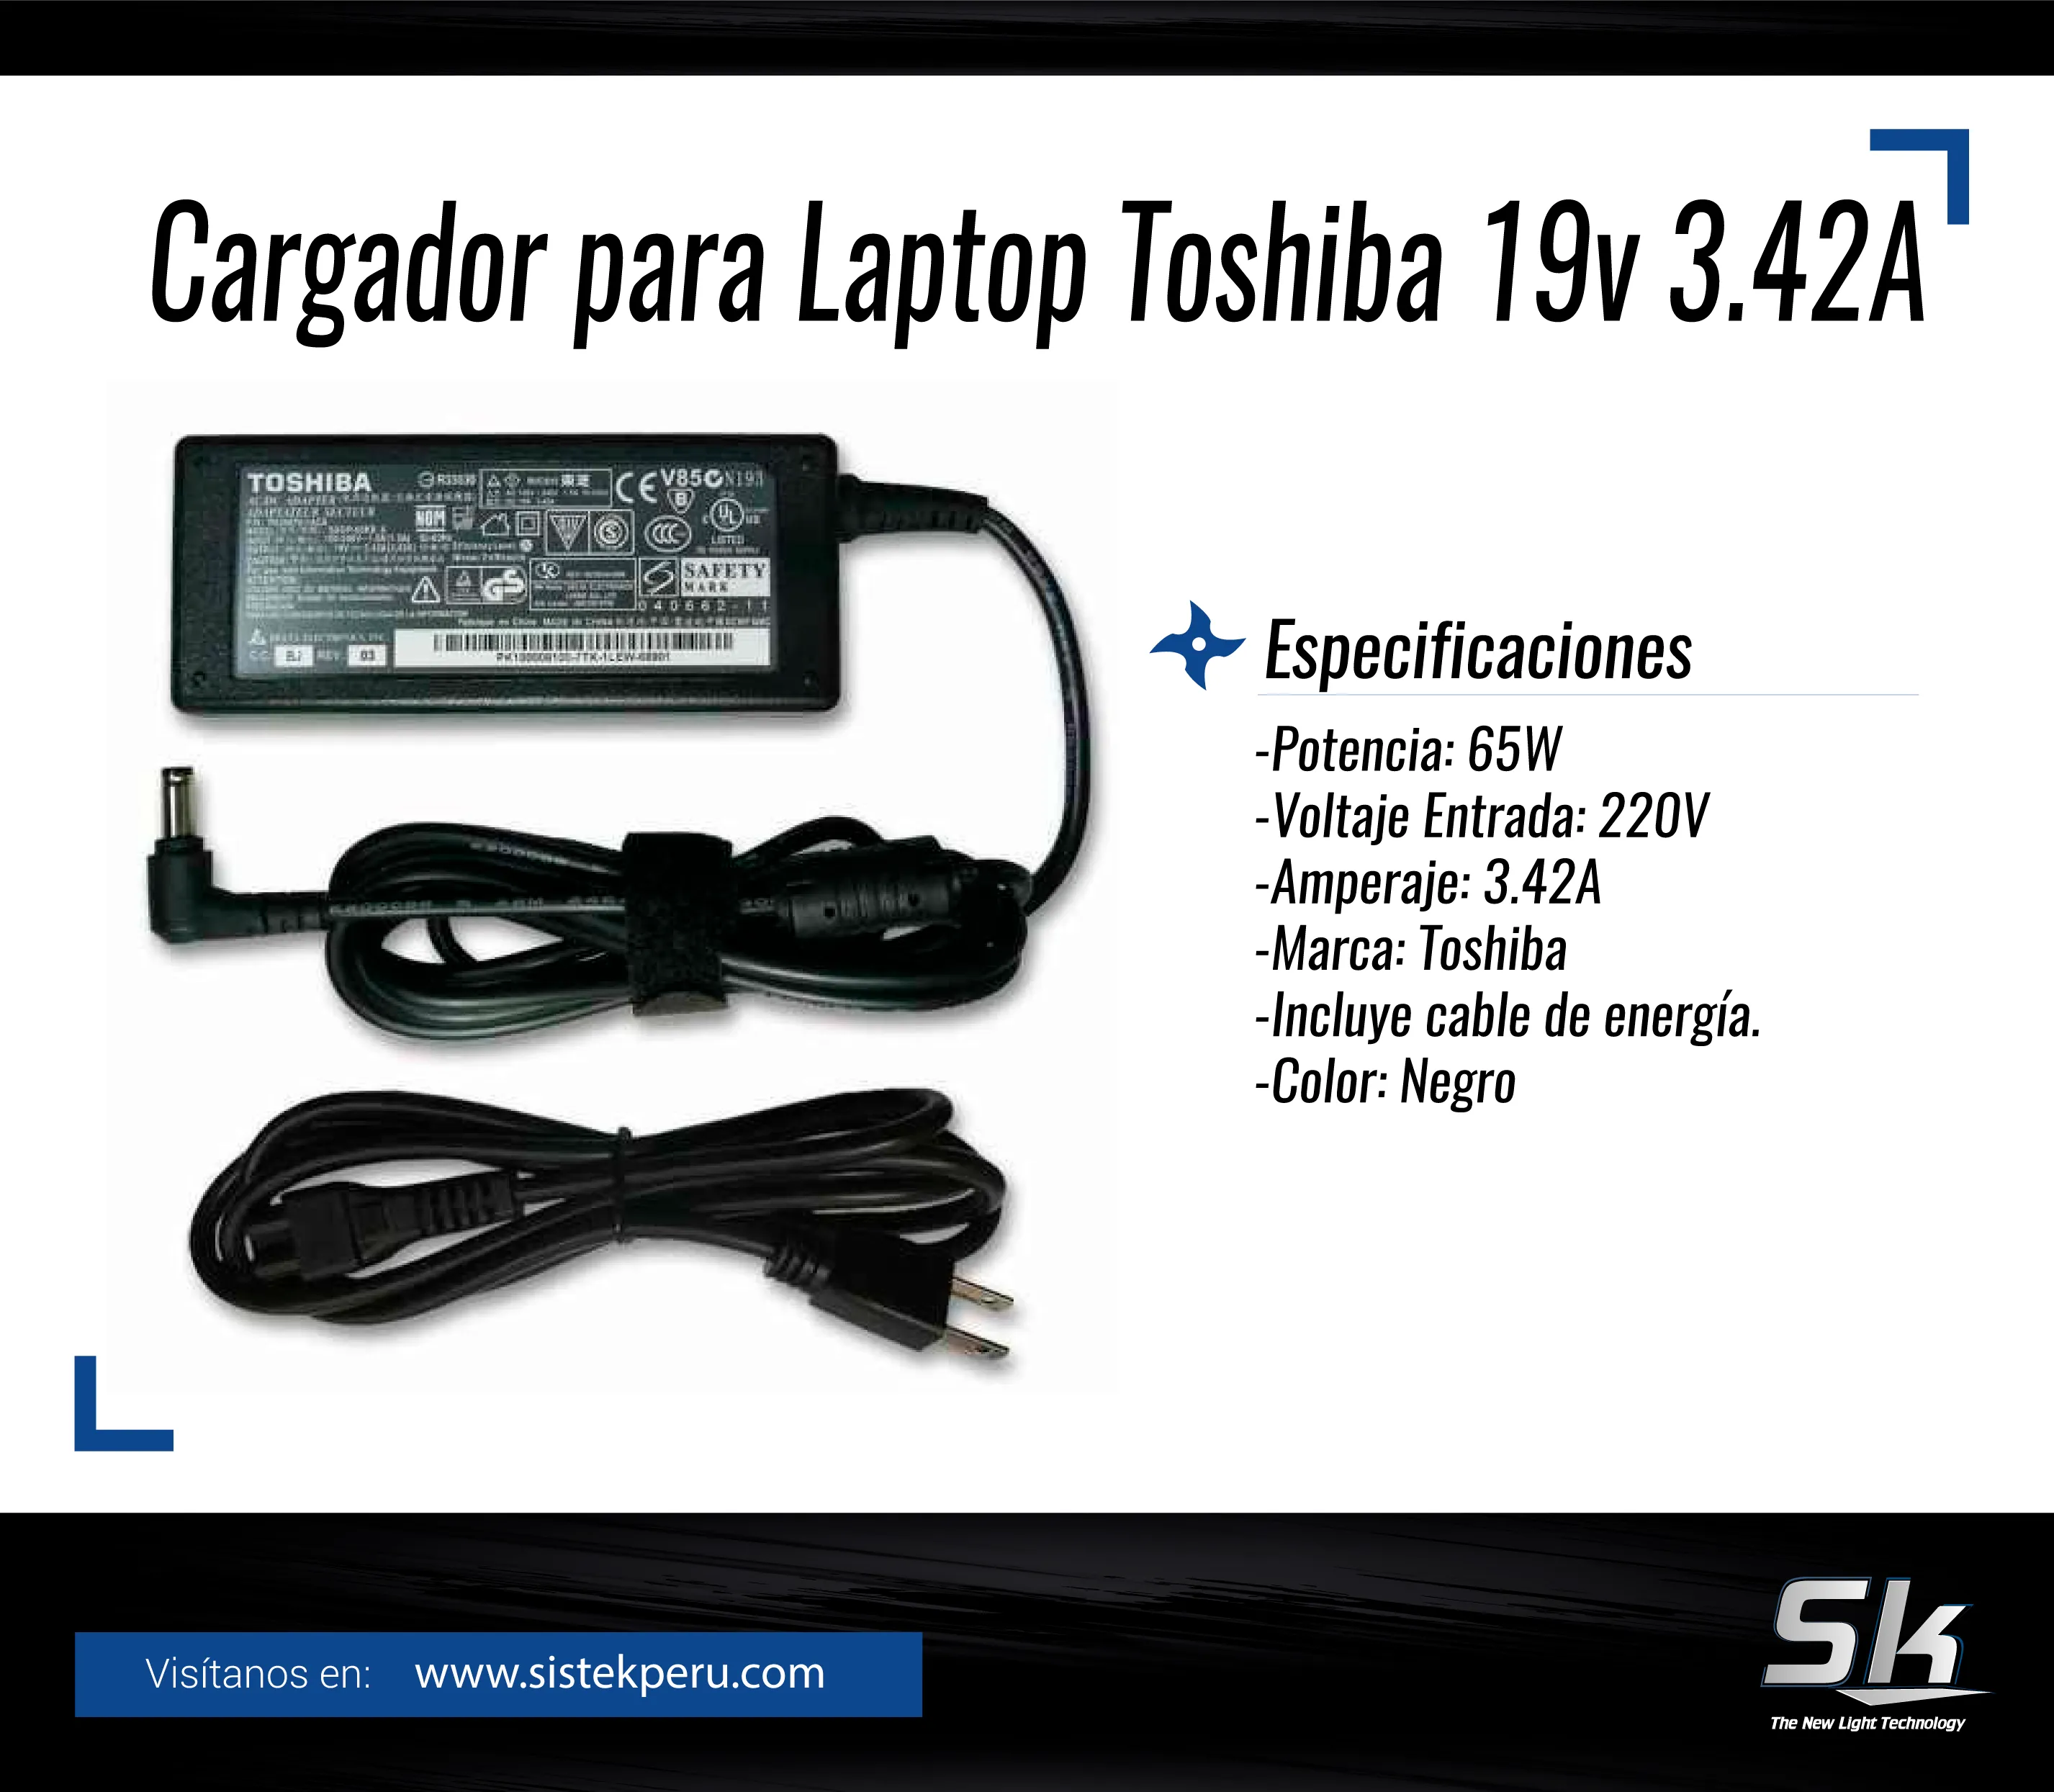 Cargador para Laptop Toshiba 19v